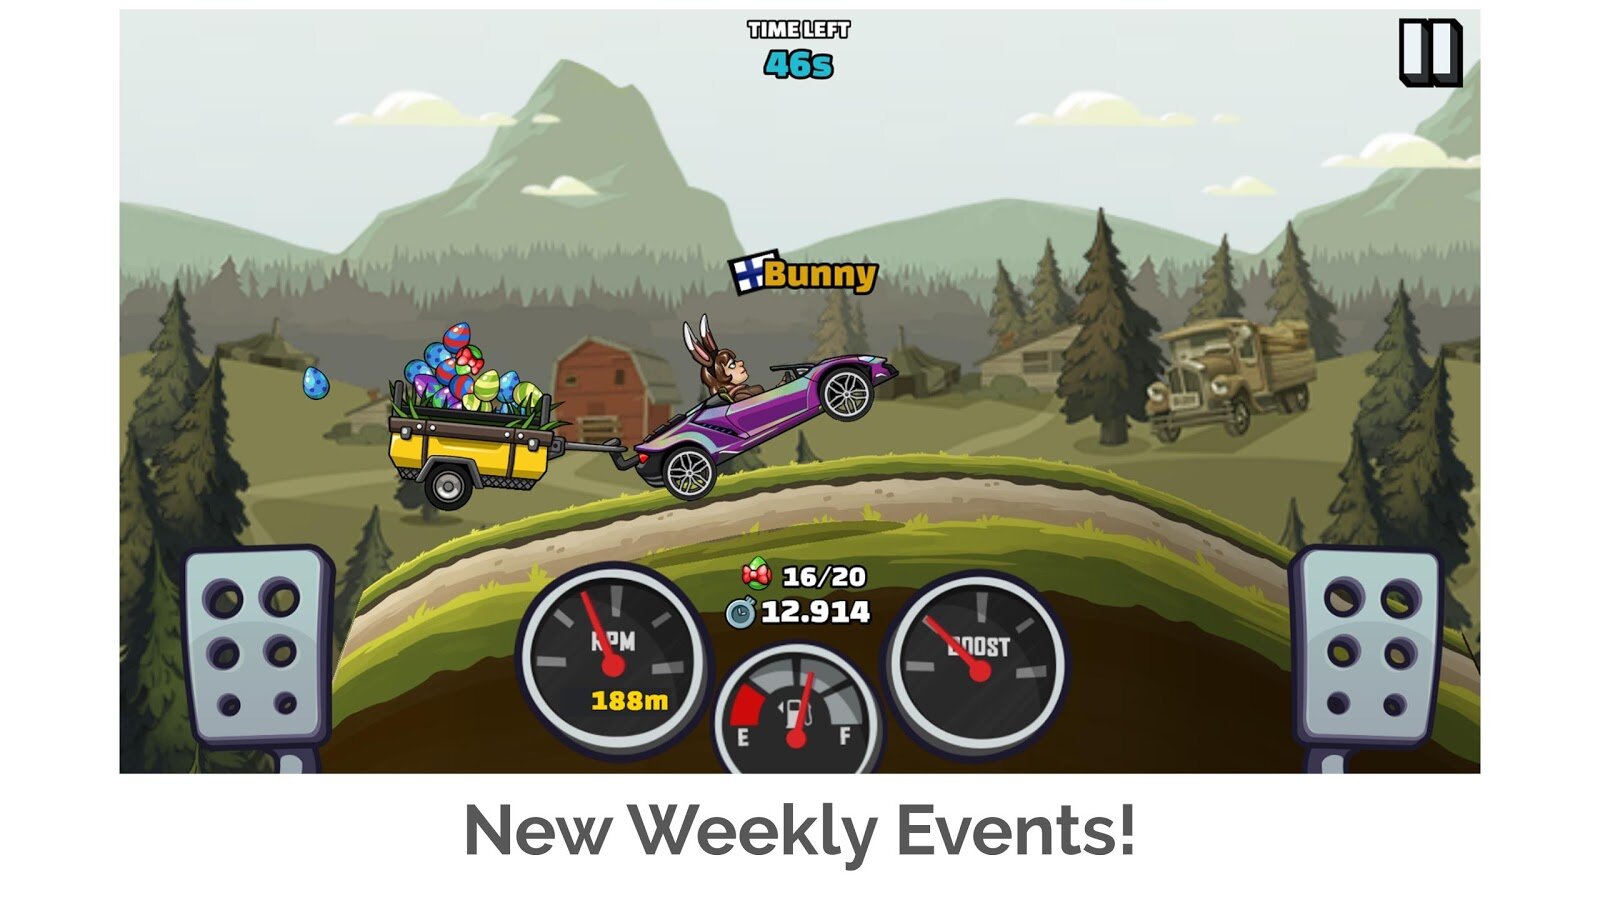 Baixar Hill Climb Racing 2 1.58 Android - Download APK Grátis